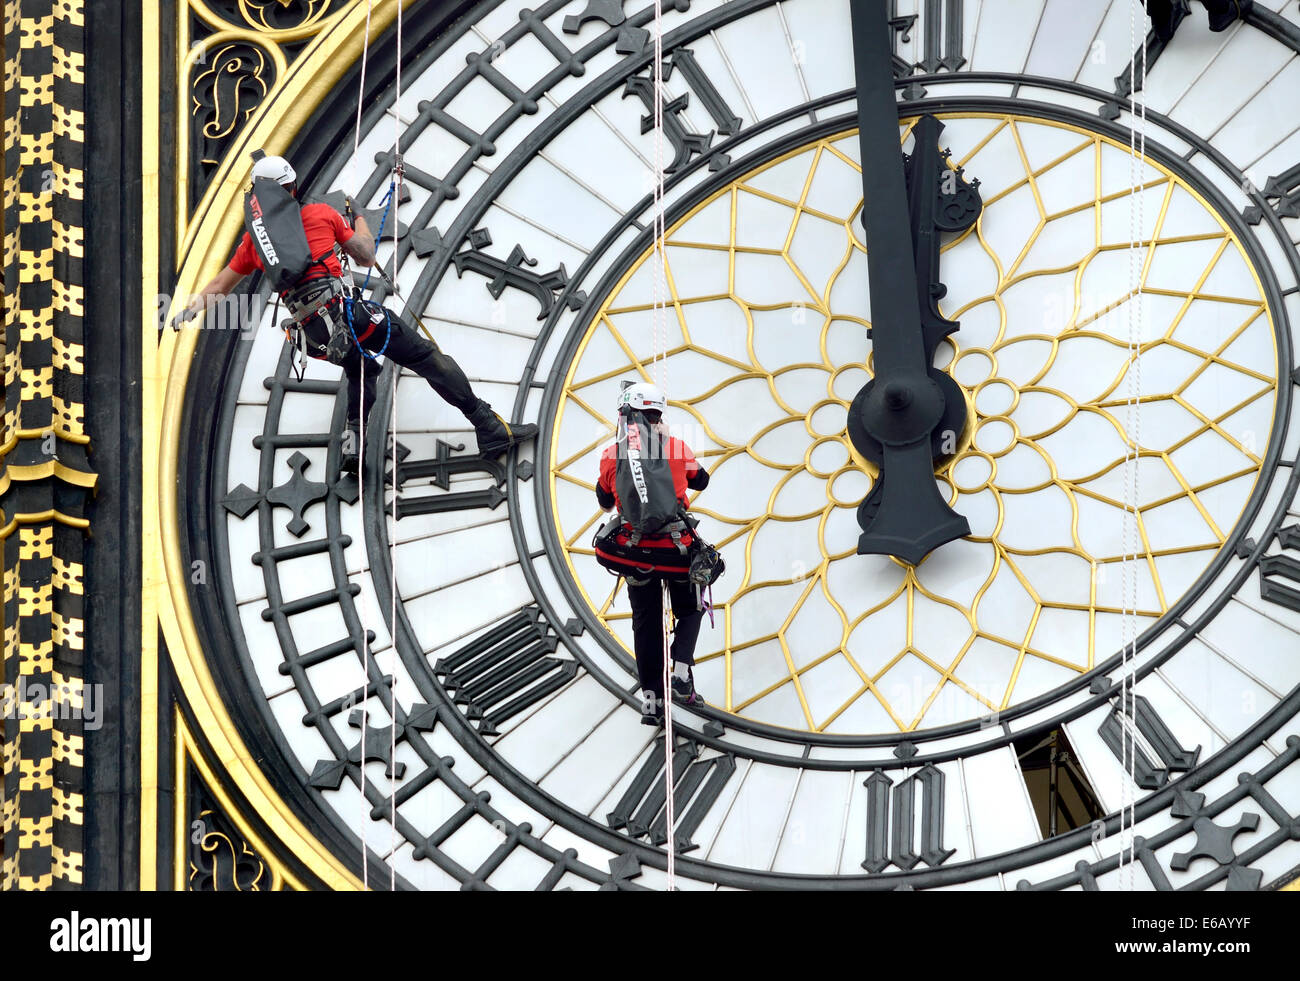 Londra, Regno Unito. 19 Ago, 2014. Pulizia del clockfaces del Big Ben. Per la prima volta dal 2010, i pannelli di vetro nelle quattro facce di orologio della torre di Elizabeth (noto come Big Ben, che è in realtà la campana all'interno) vengono puliti. Si prevede di prendere quattro giorni - un giorno per ogni faccia Foto Stock